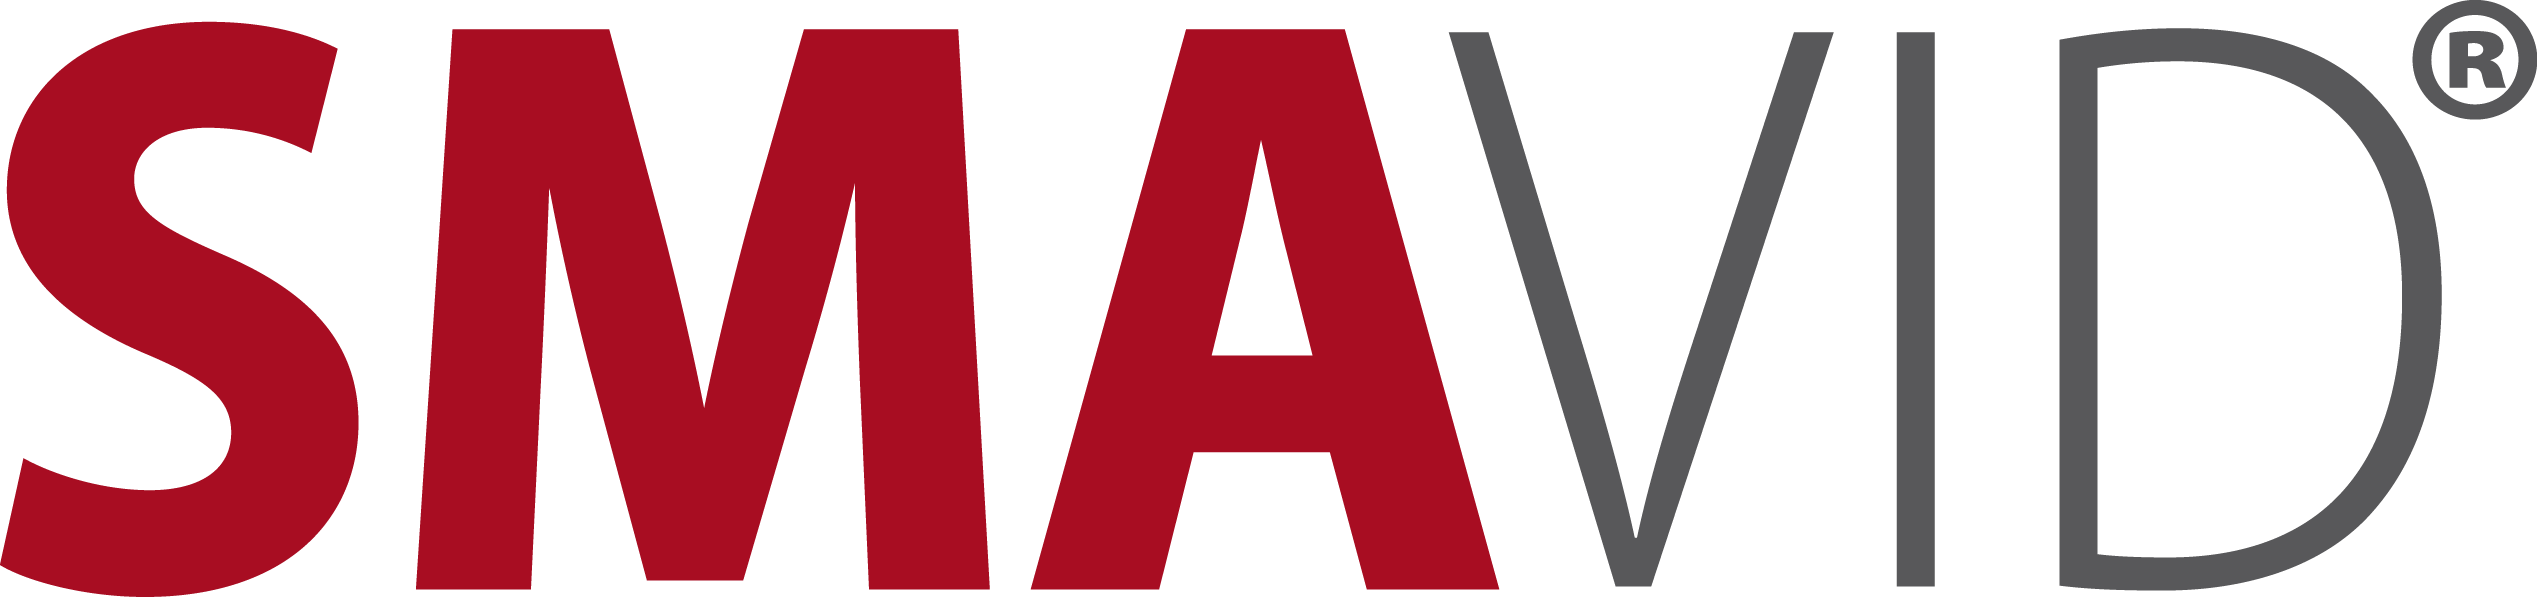 SMAVID logo